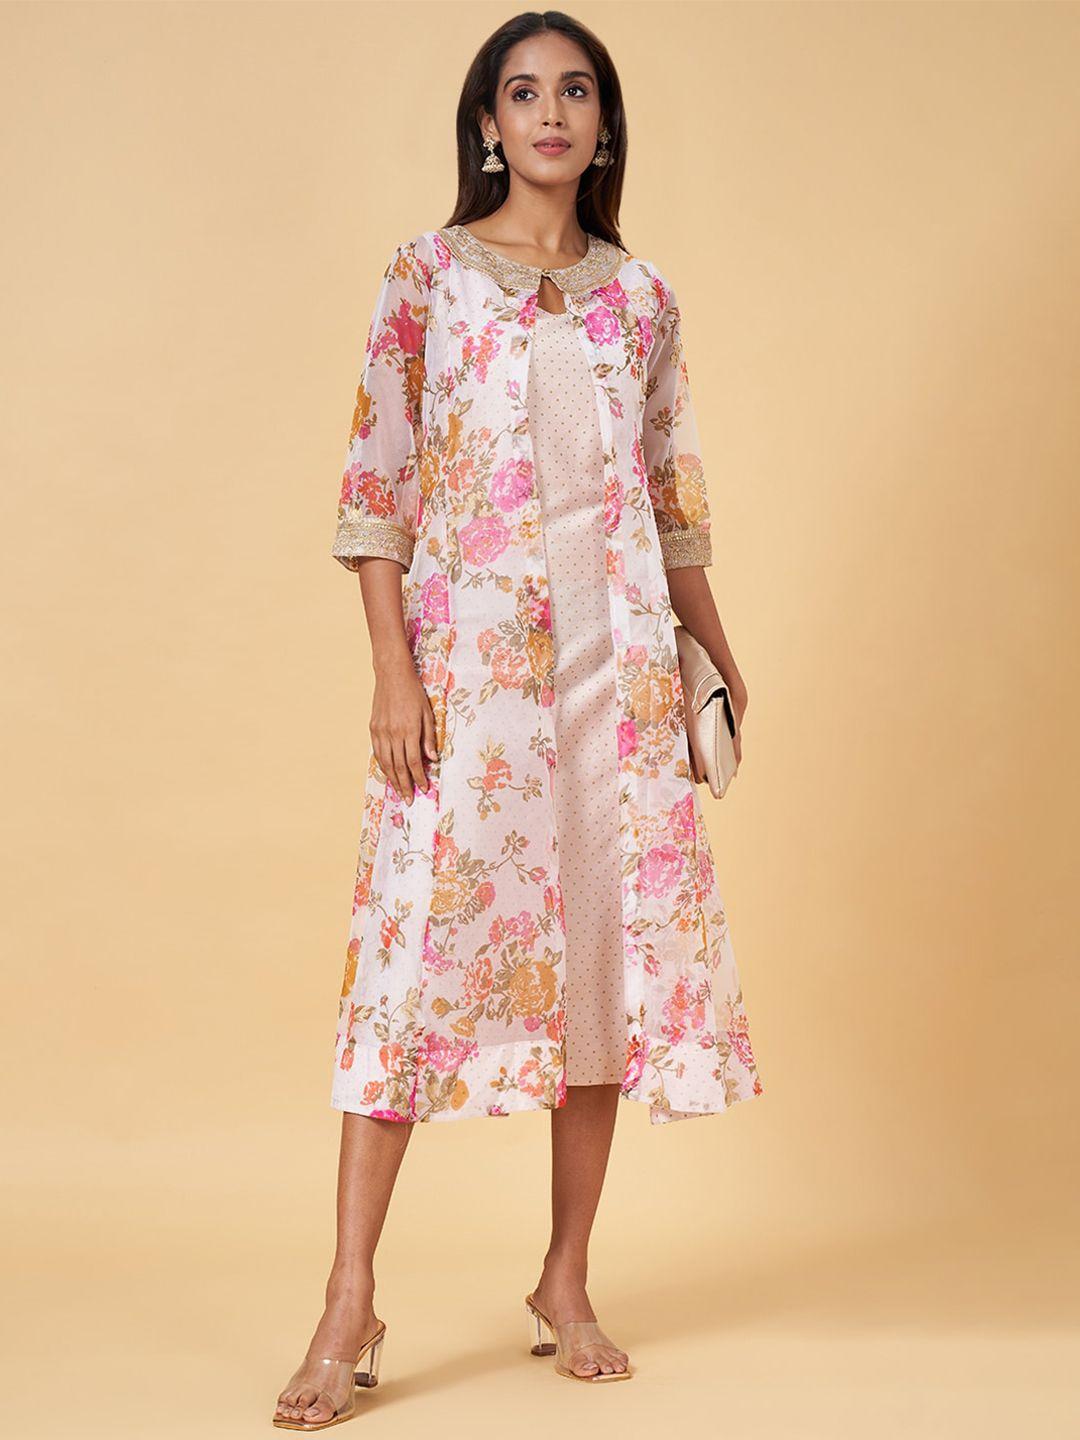 rangmanch by pantaloons mauve floral print a-line midi dress